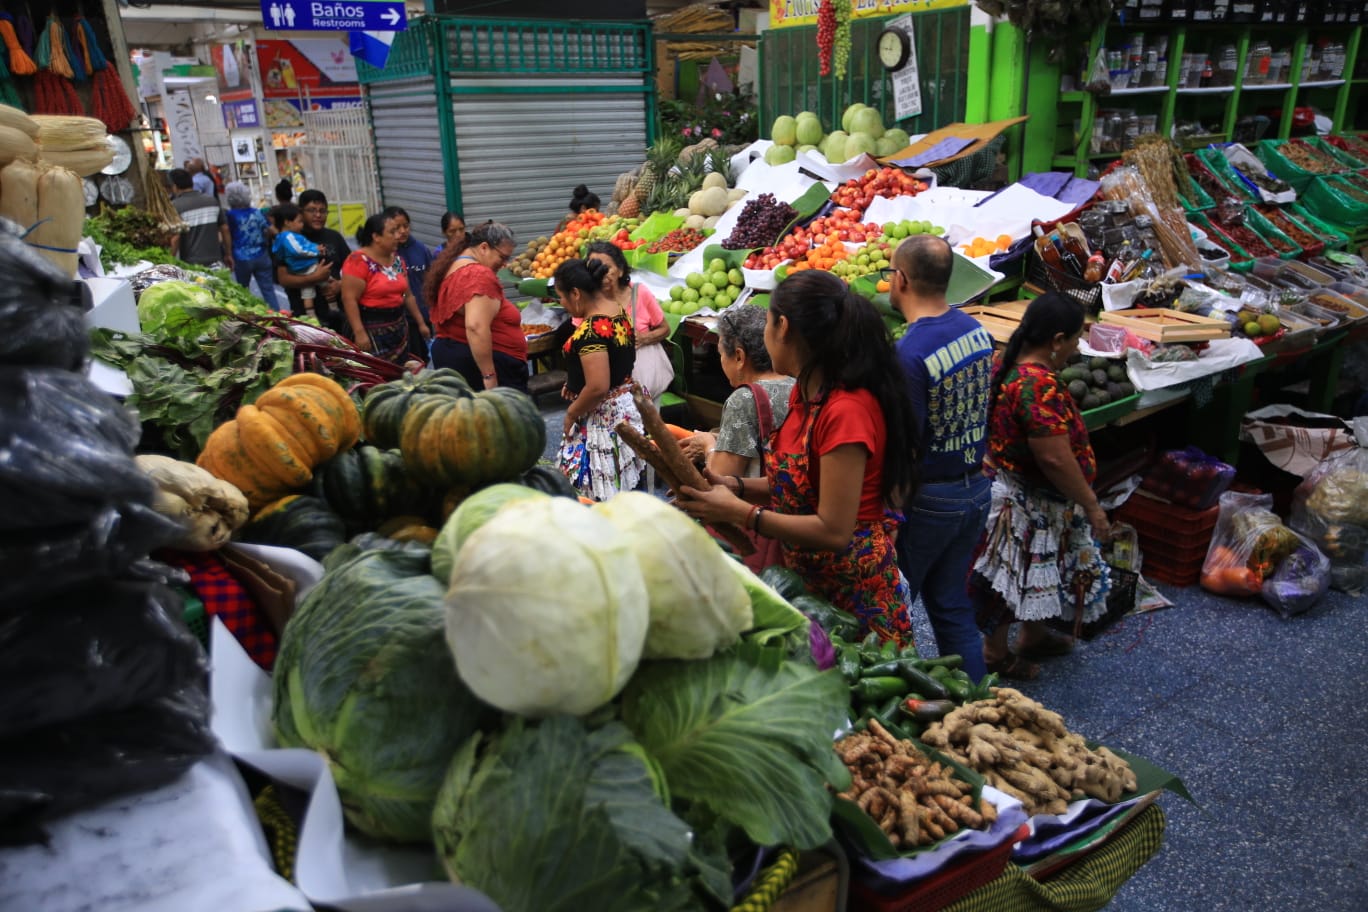 Los bloqueos en carretera han afectado el comercio terrestre de bienes agrícolas nacional e internacional. (Foto Prensa Libre: Carlos Hernández)